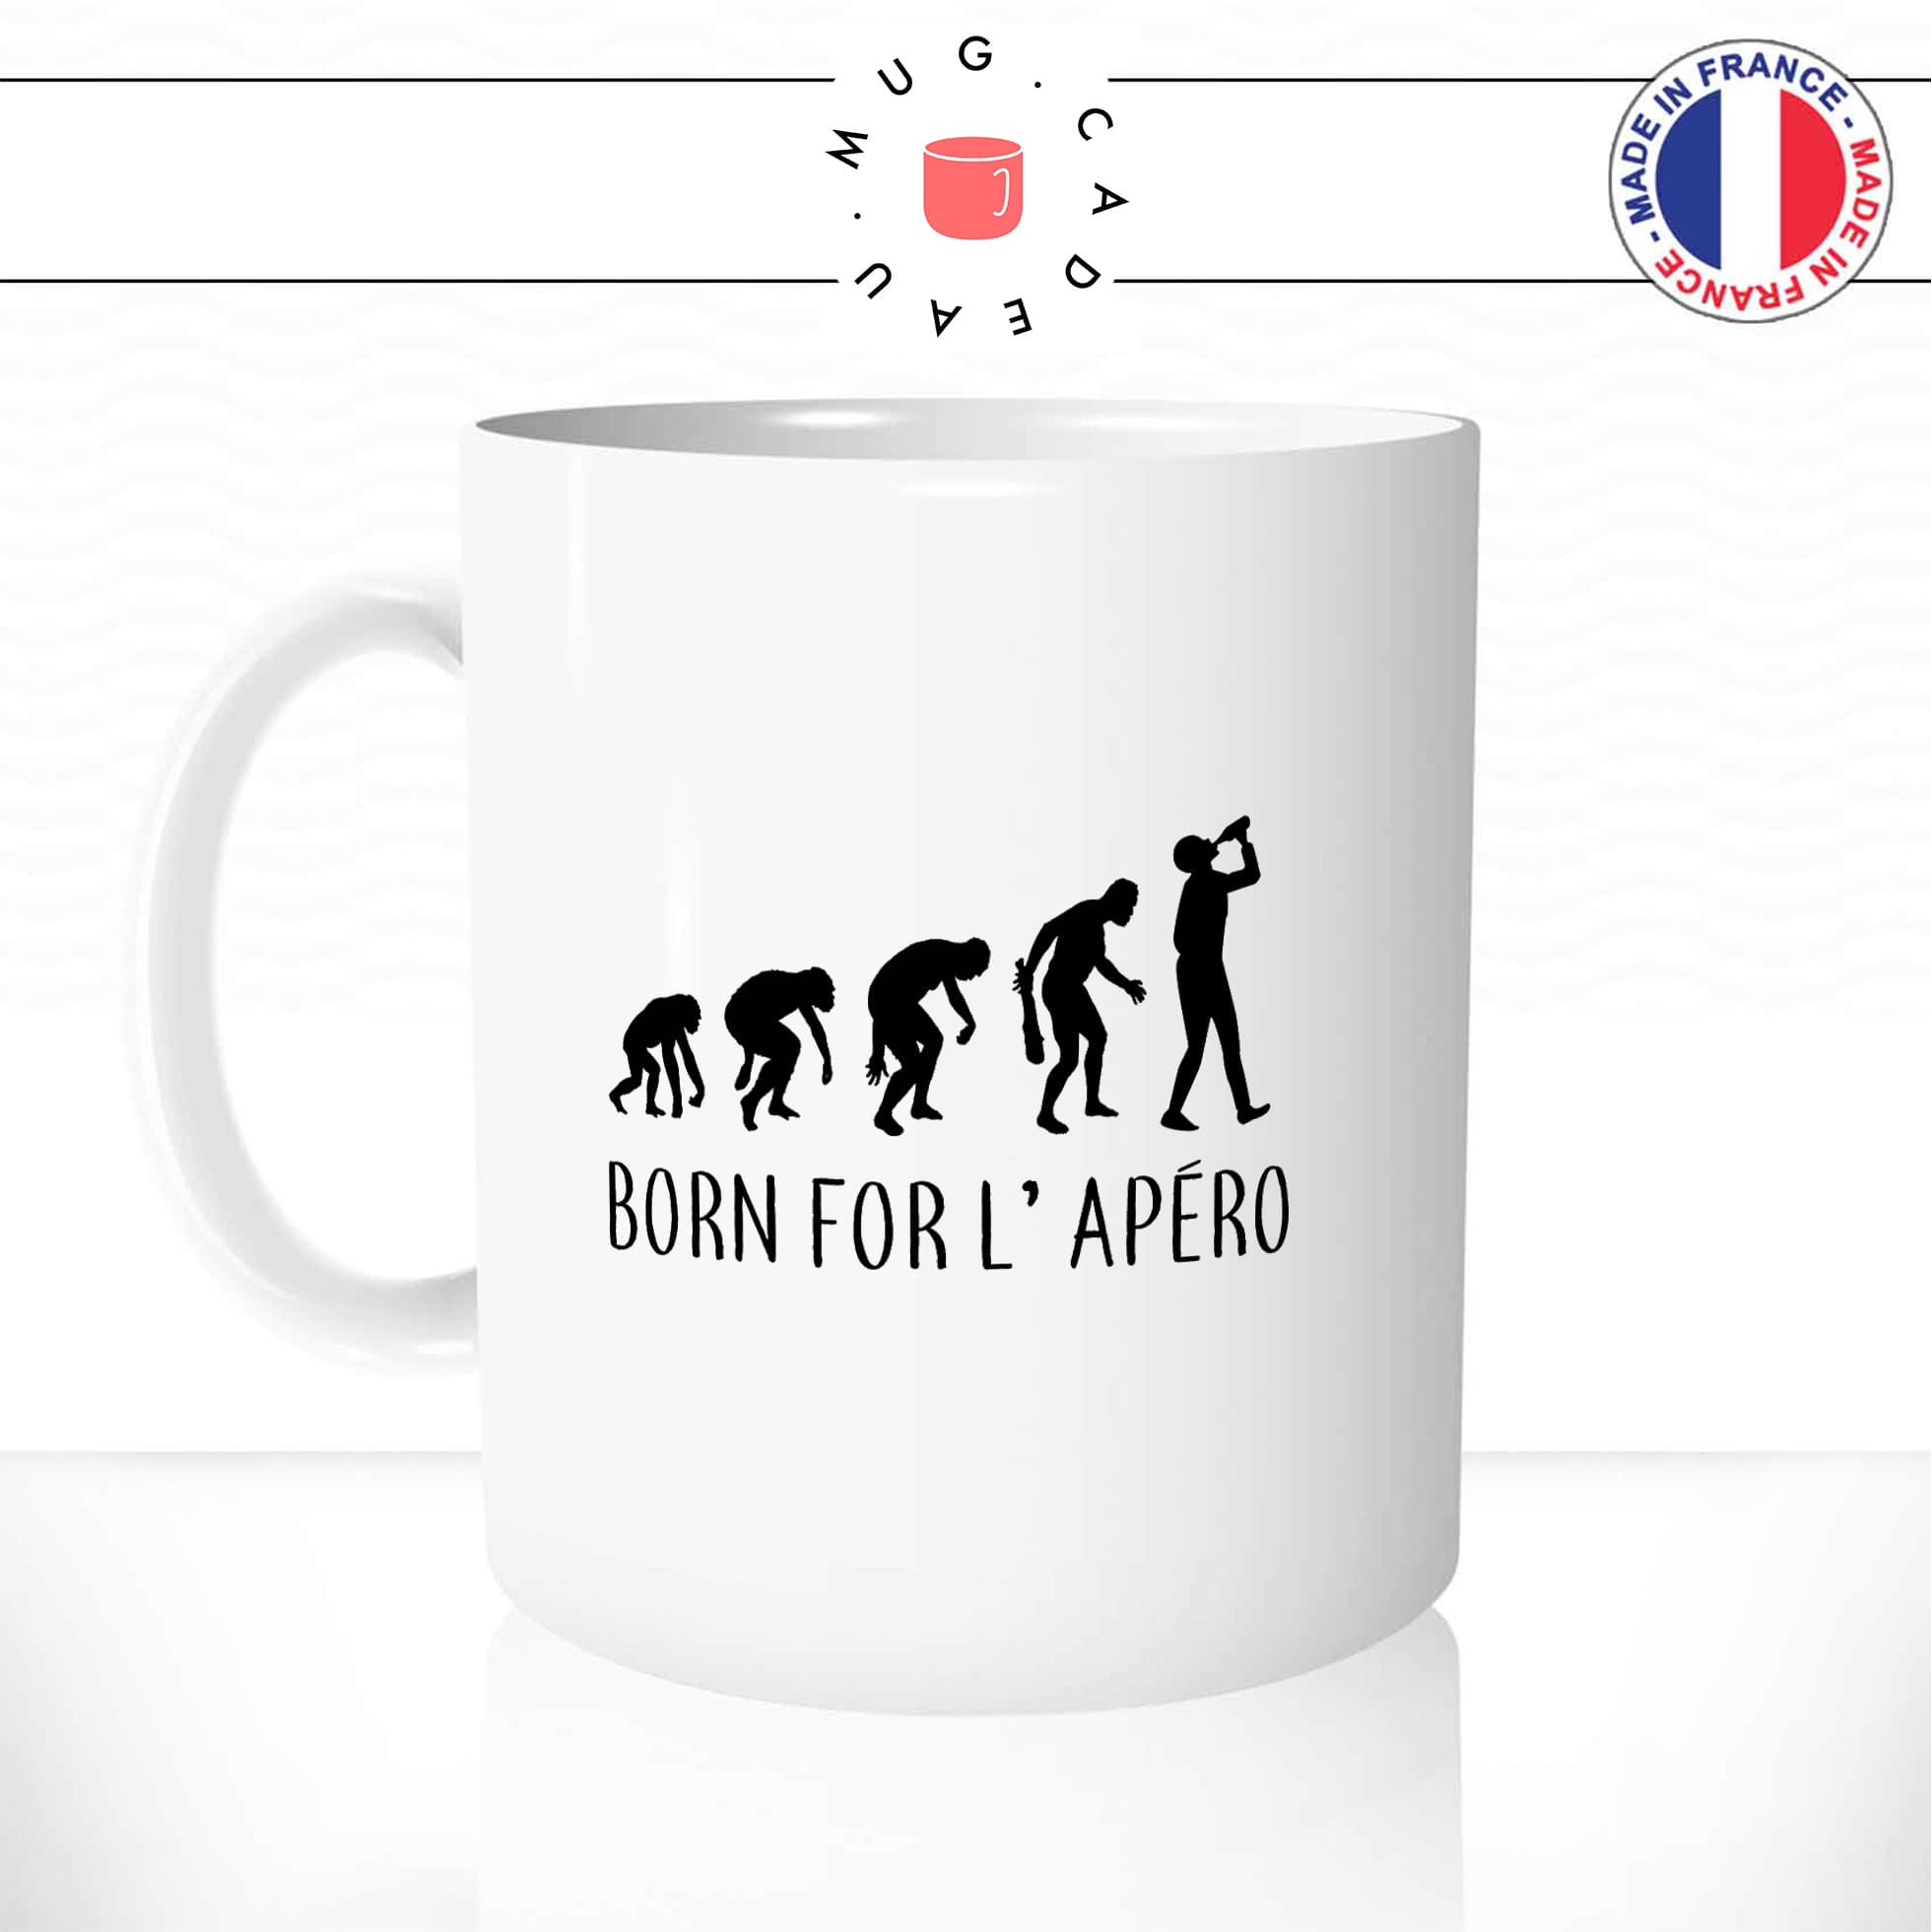 mug-tasse-blanc-unique-born-for-l'apéro-evolution-humaine-homme-femme-parodie-humour-fun-cool-idée-cadeau-original-personnalisé